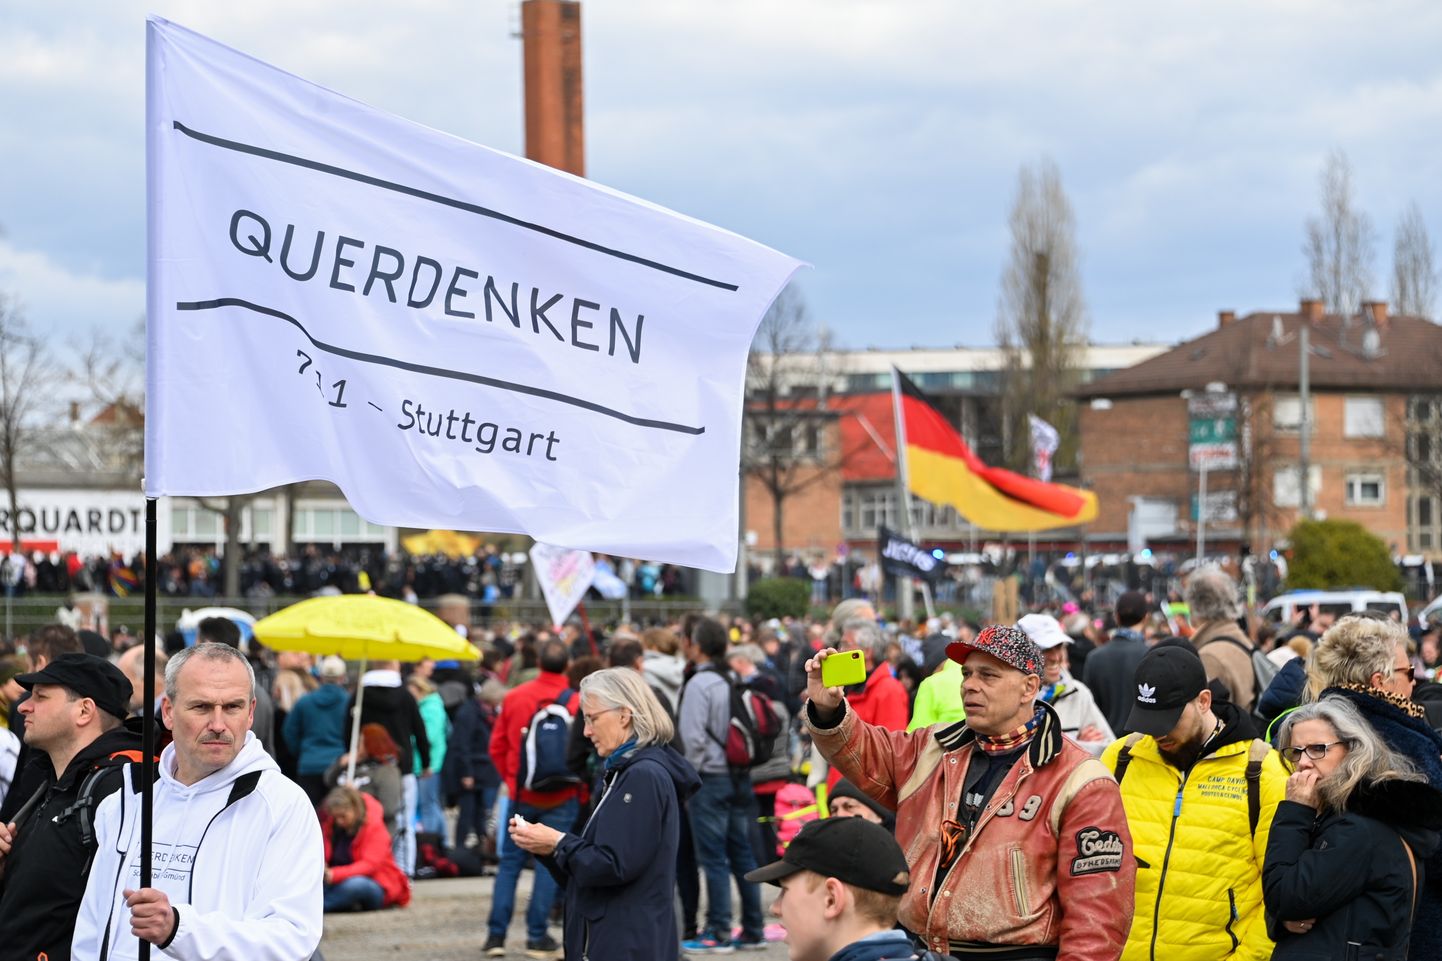 Koroonapiirangute vastane meeleavaldus Saksamaal Stuttgartis. Saksamaa kaotas hea ajakirjanduskeskkonnaga riigi staatuse, kuna protestidel rünnati korduvalt ajakirjanikke.